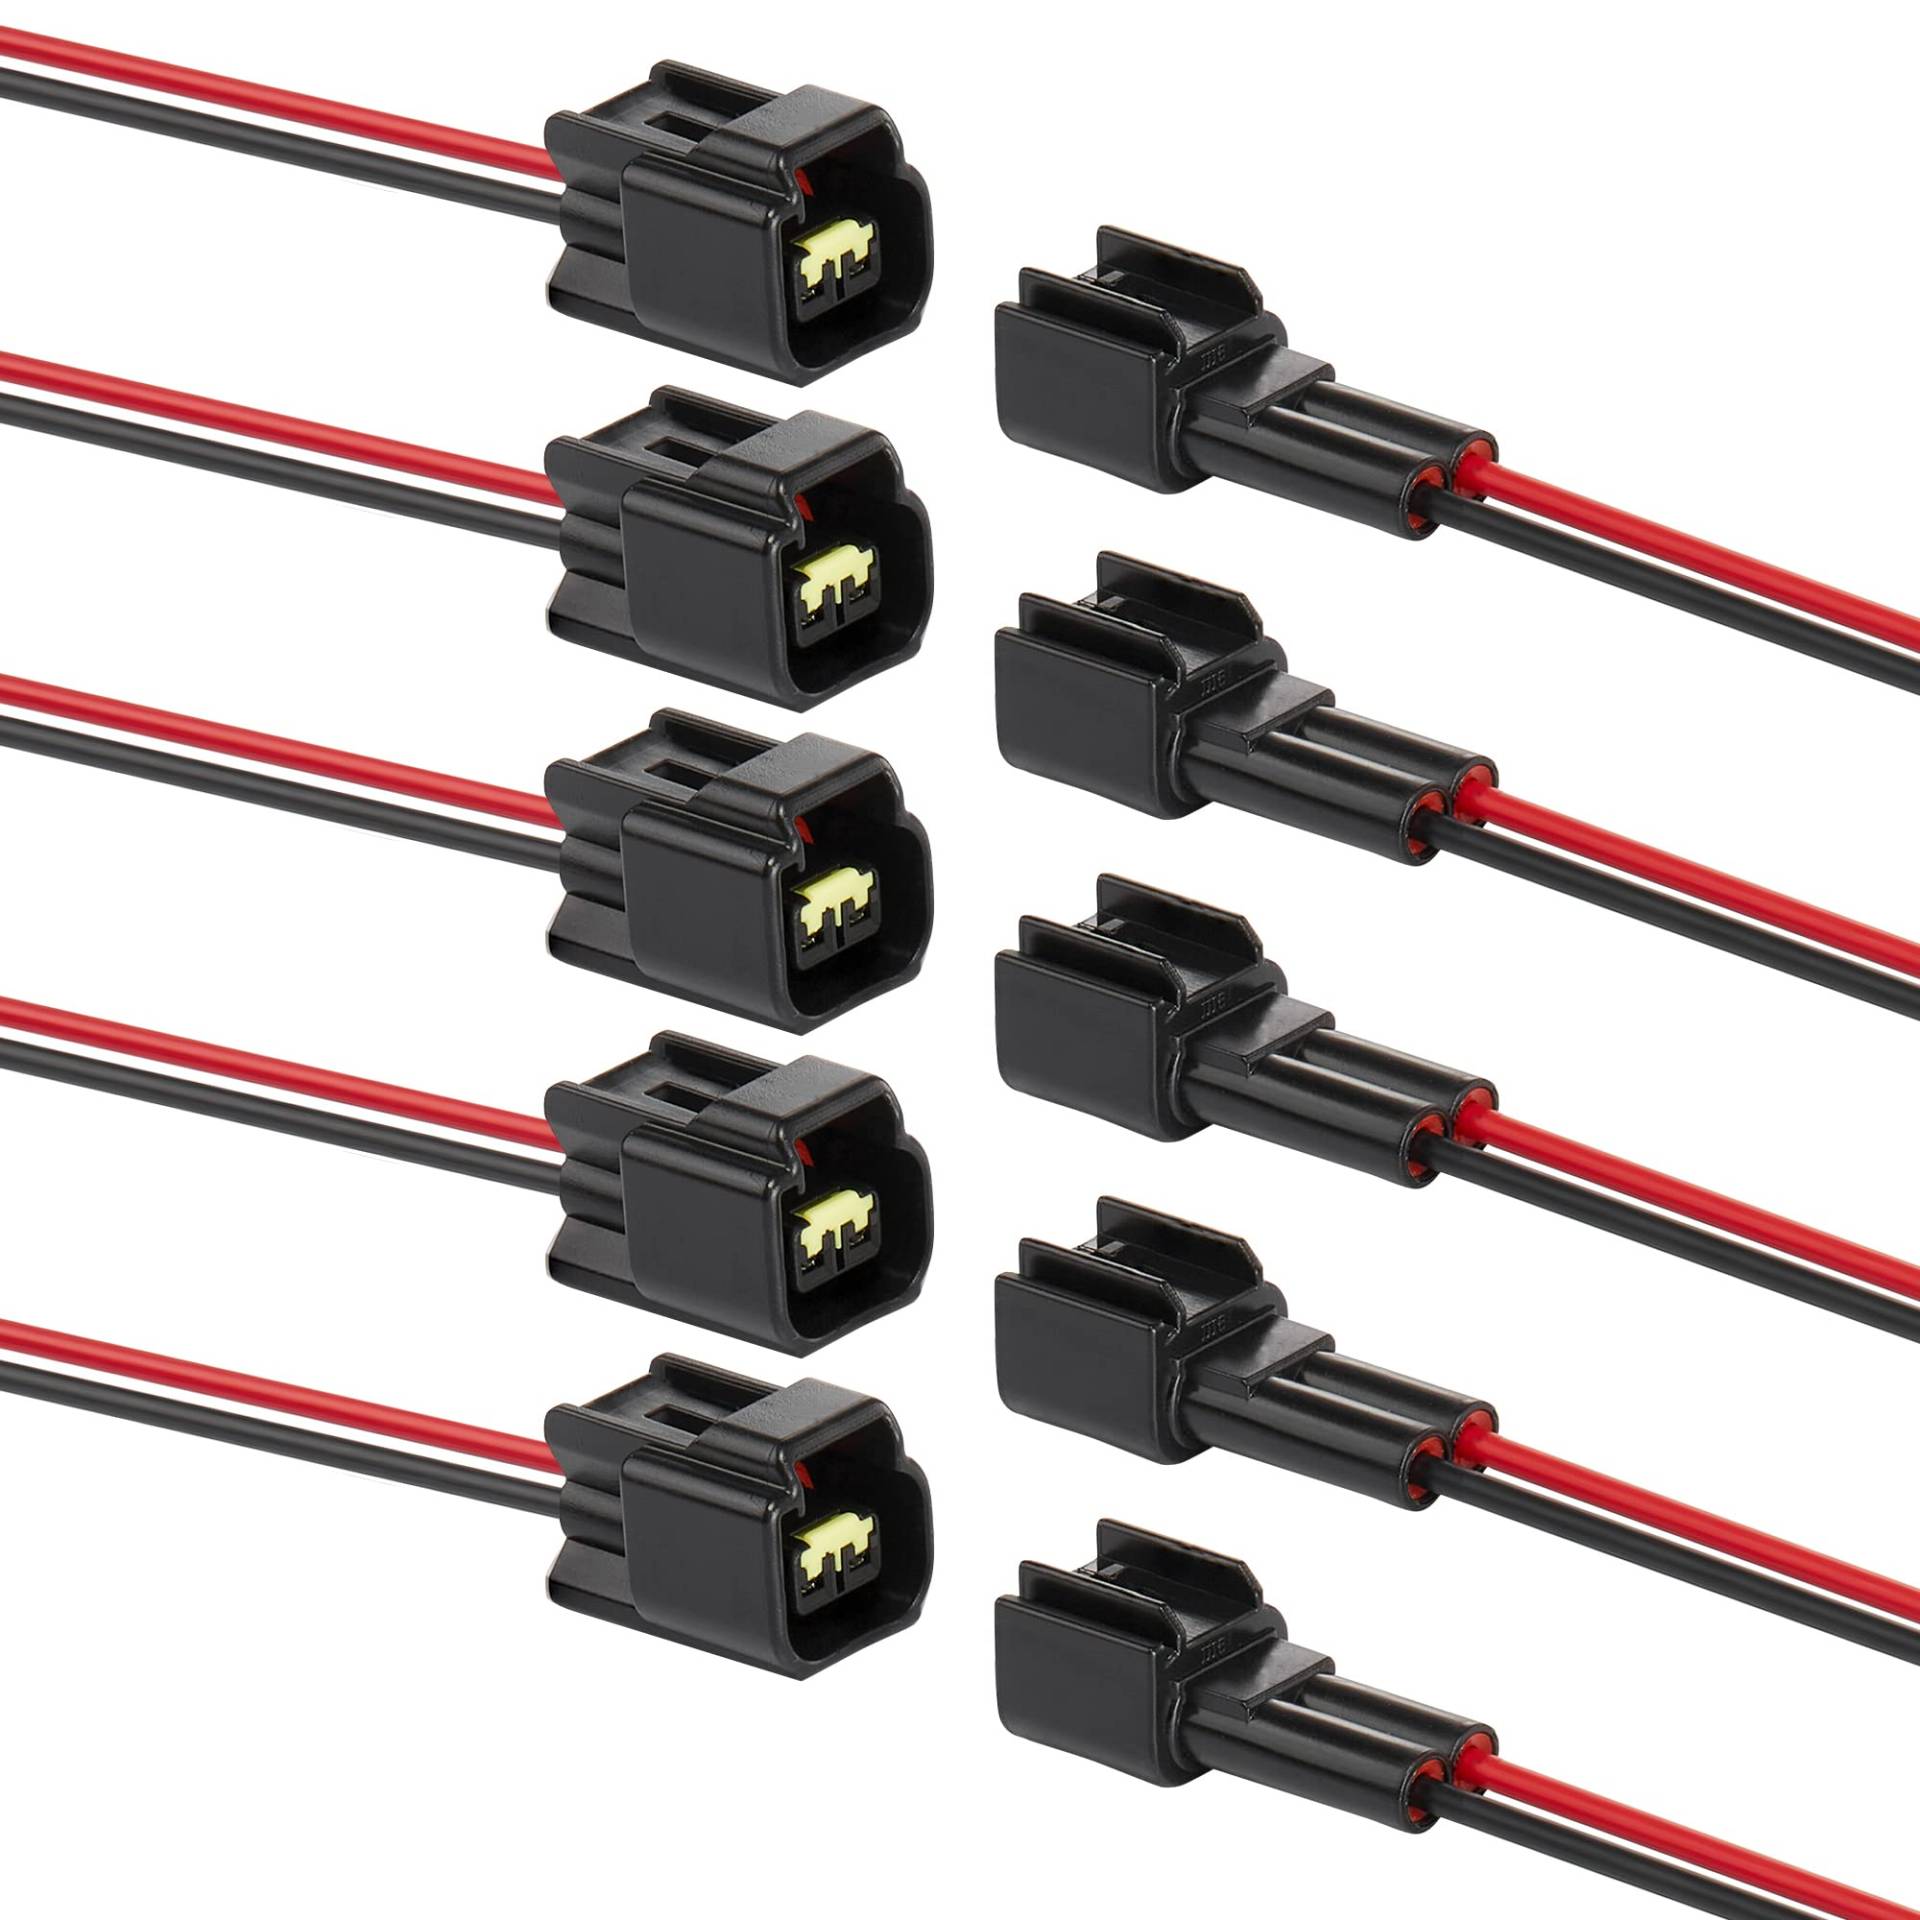 ZHOFONET 2 Pin Anschlussstecker, 5pairs Kabel Steckverbinder Stecker,12v Auto Elektrischer Anschluss,Wasserdicht Schnellverbinder mit 16AWG-Kabel für KFZ von ZHOFONET